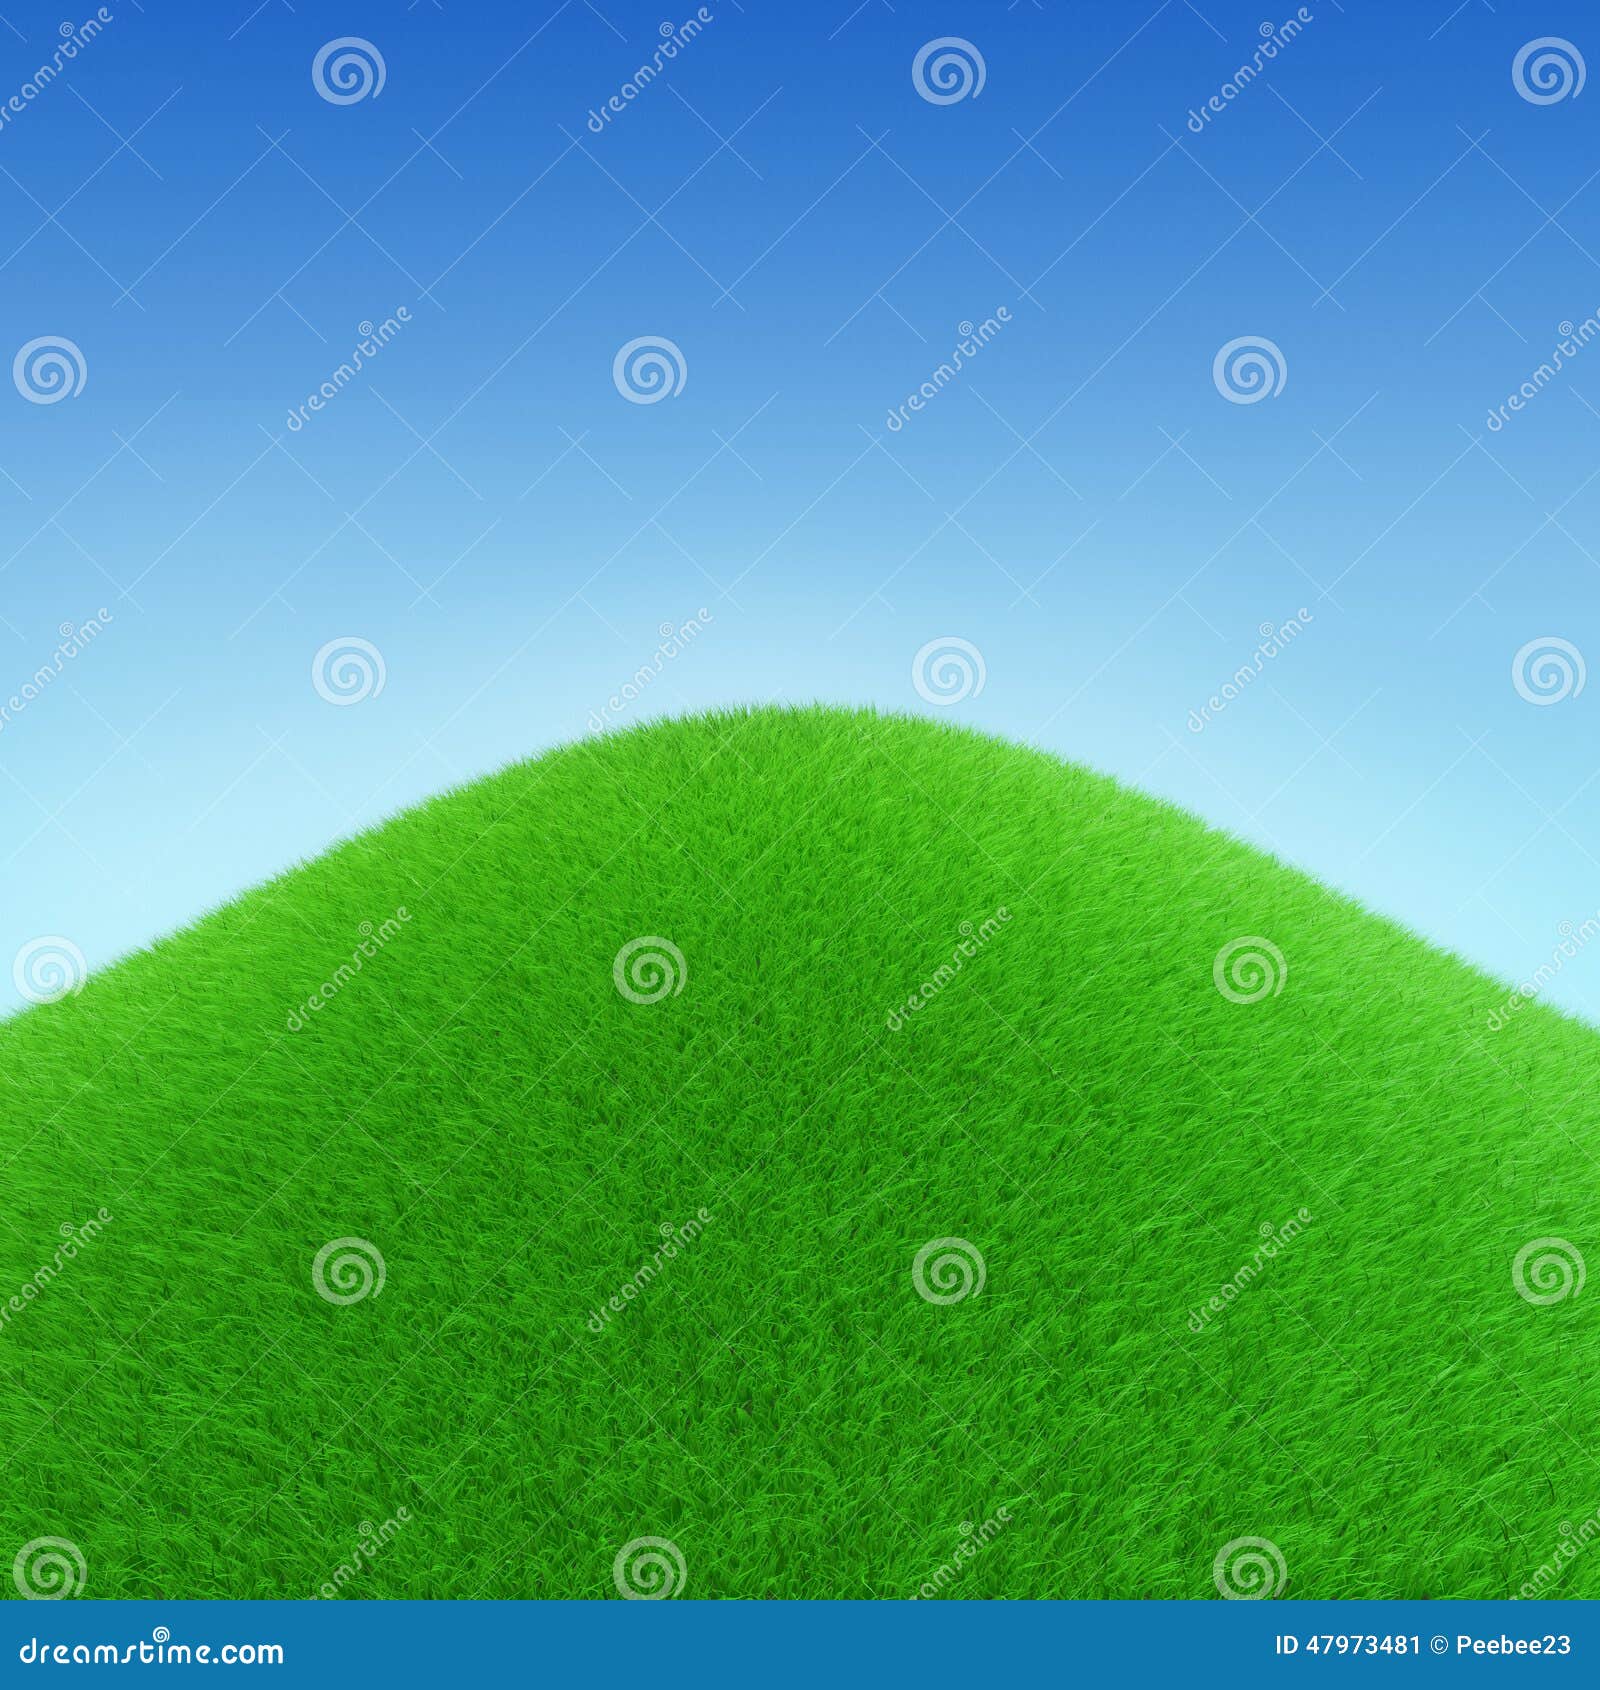 perfect grassy hill